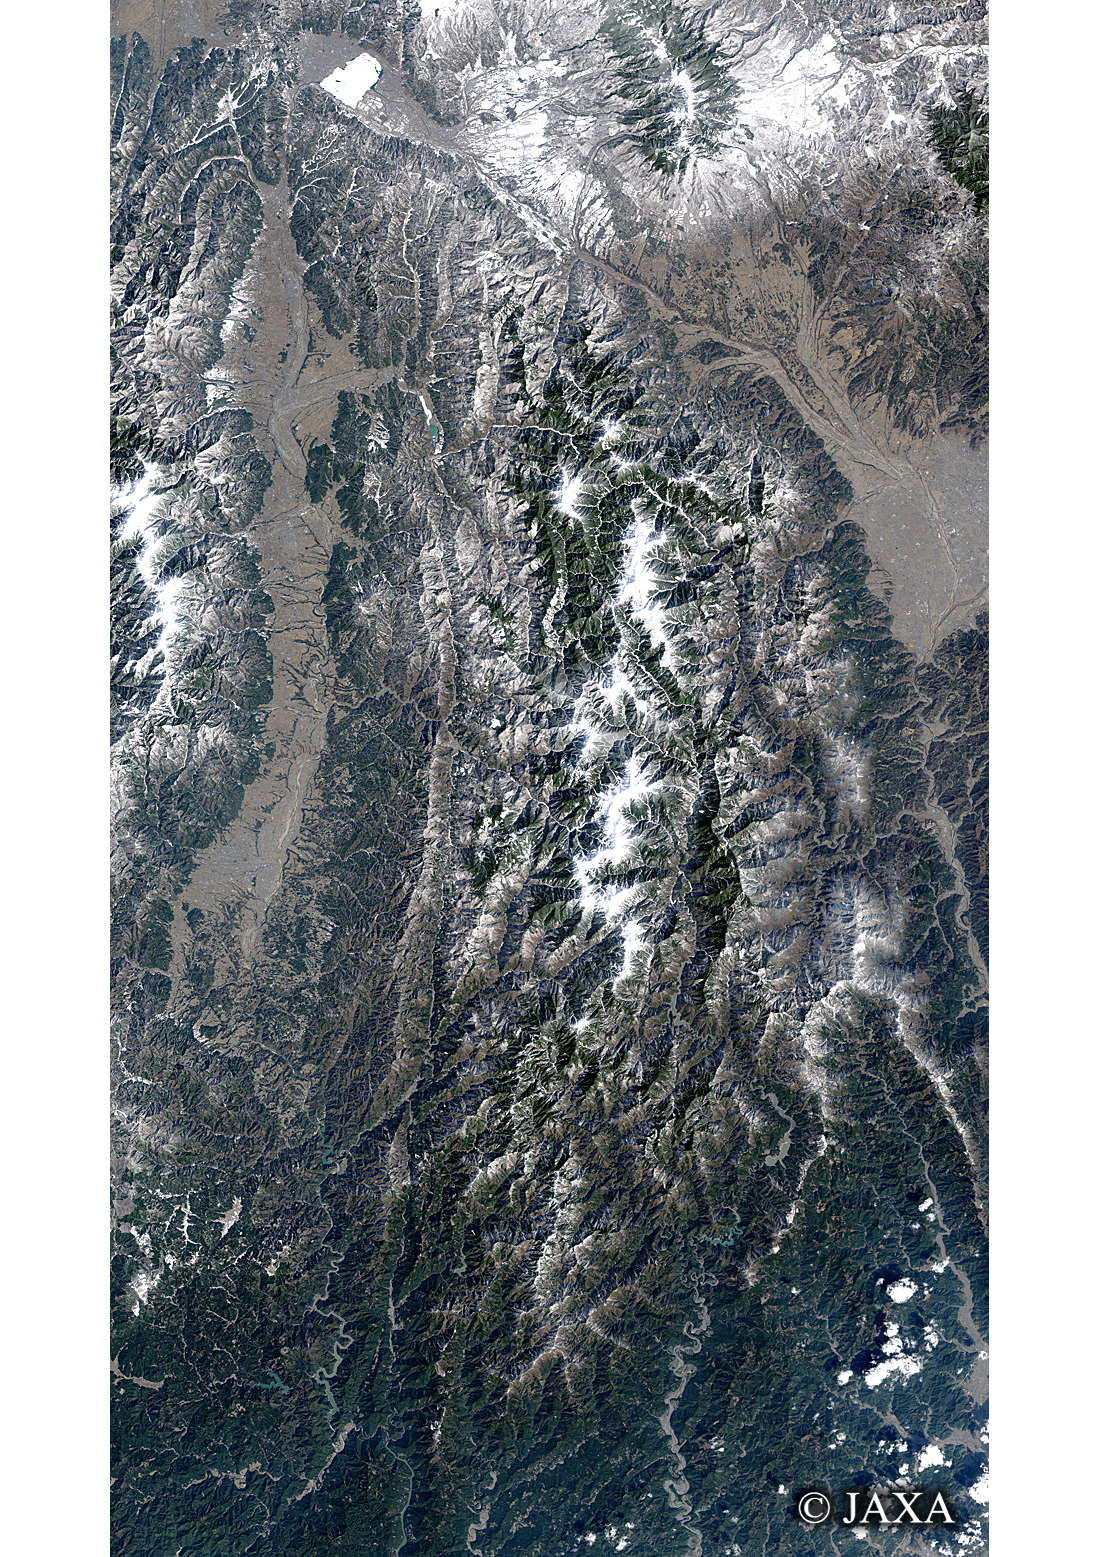 だいちから見た日本の都市 南アルプス:衛星画像